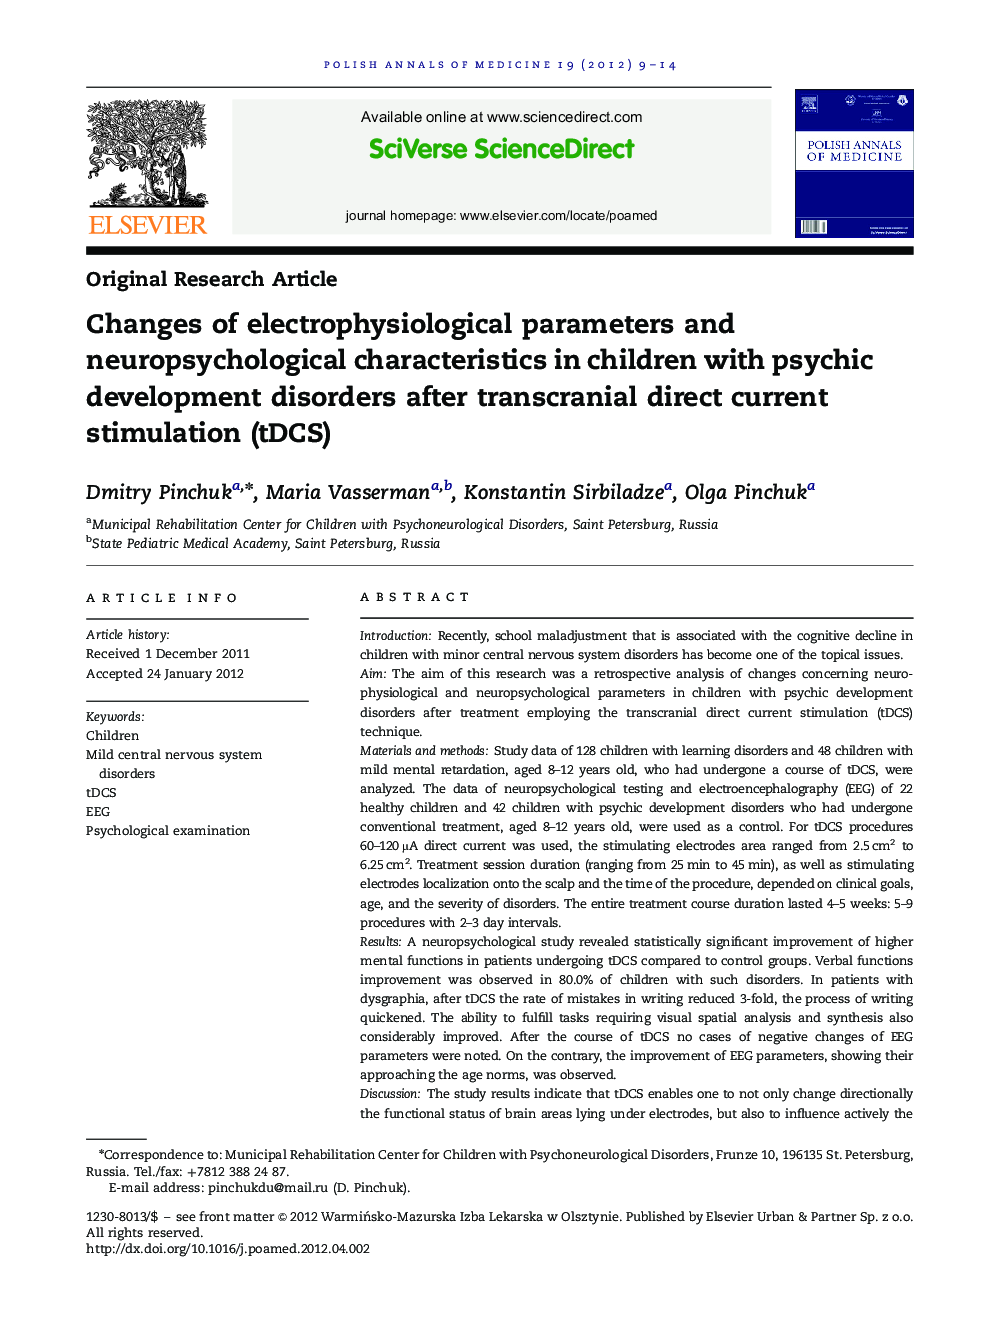 تغییرات پارامترهای الکتروفیزیولوژیک و ویژگی های نوروپسیکولوژیک در کودکان مبتلا به اختلالات رشد روانی پس از تحریک جریان مستقیم ترانس کرانیال (tDCS)